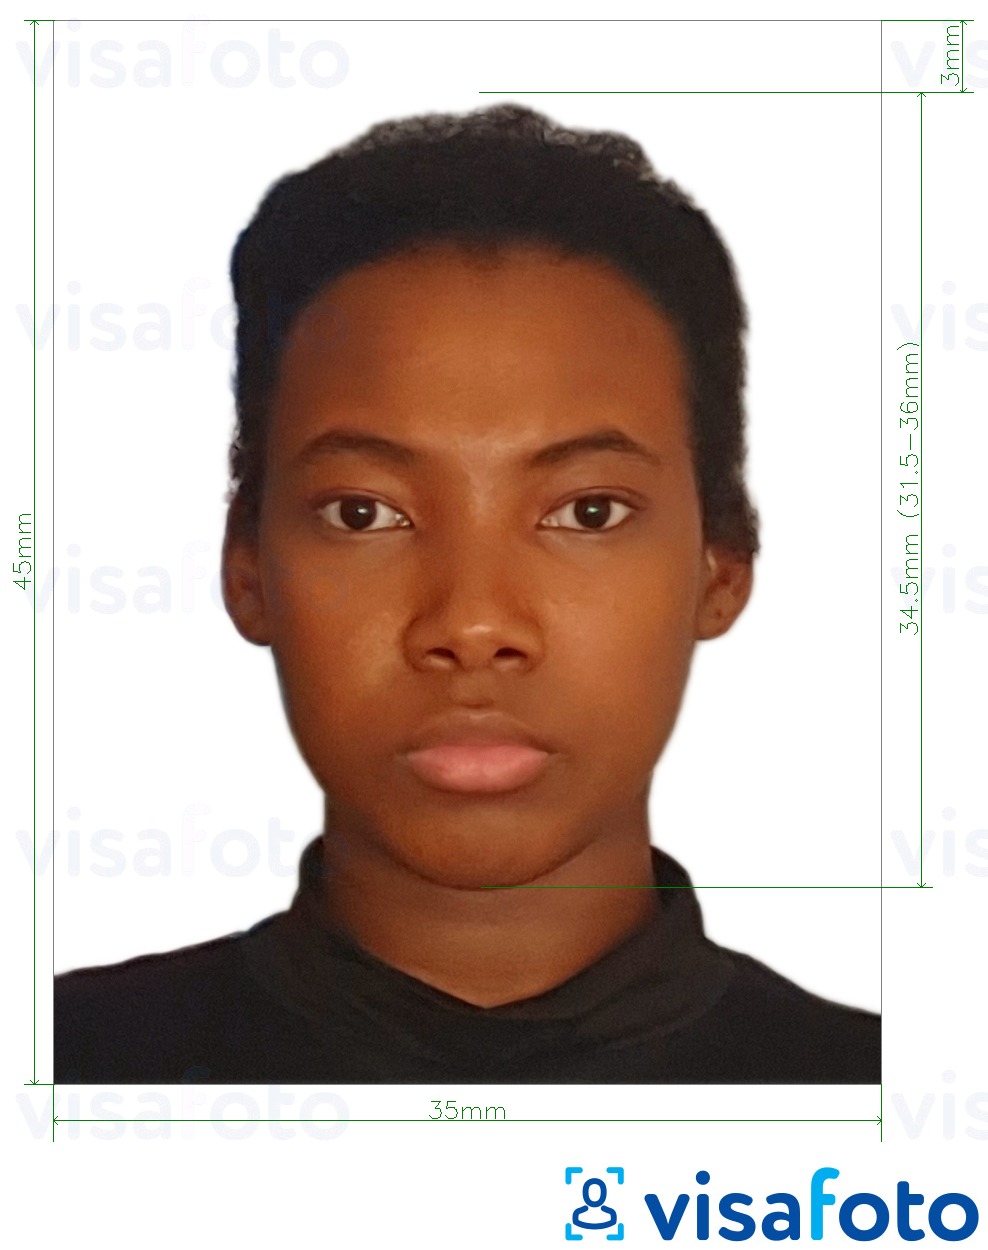 Fotobeispiel für Benin visum 3,5x4,5 cm (35x45 mm) mit genauer größenangabe